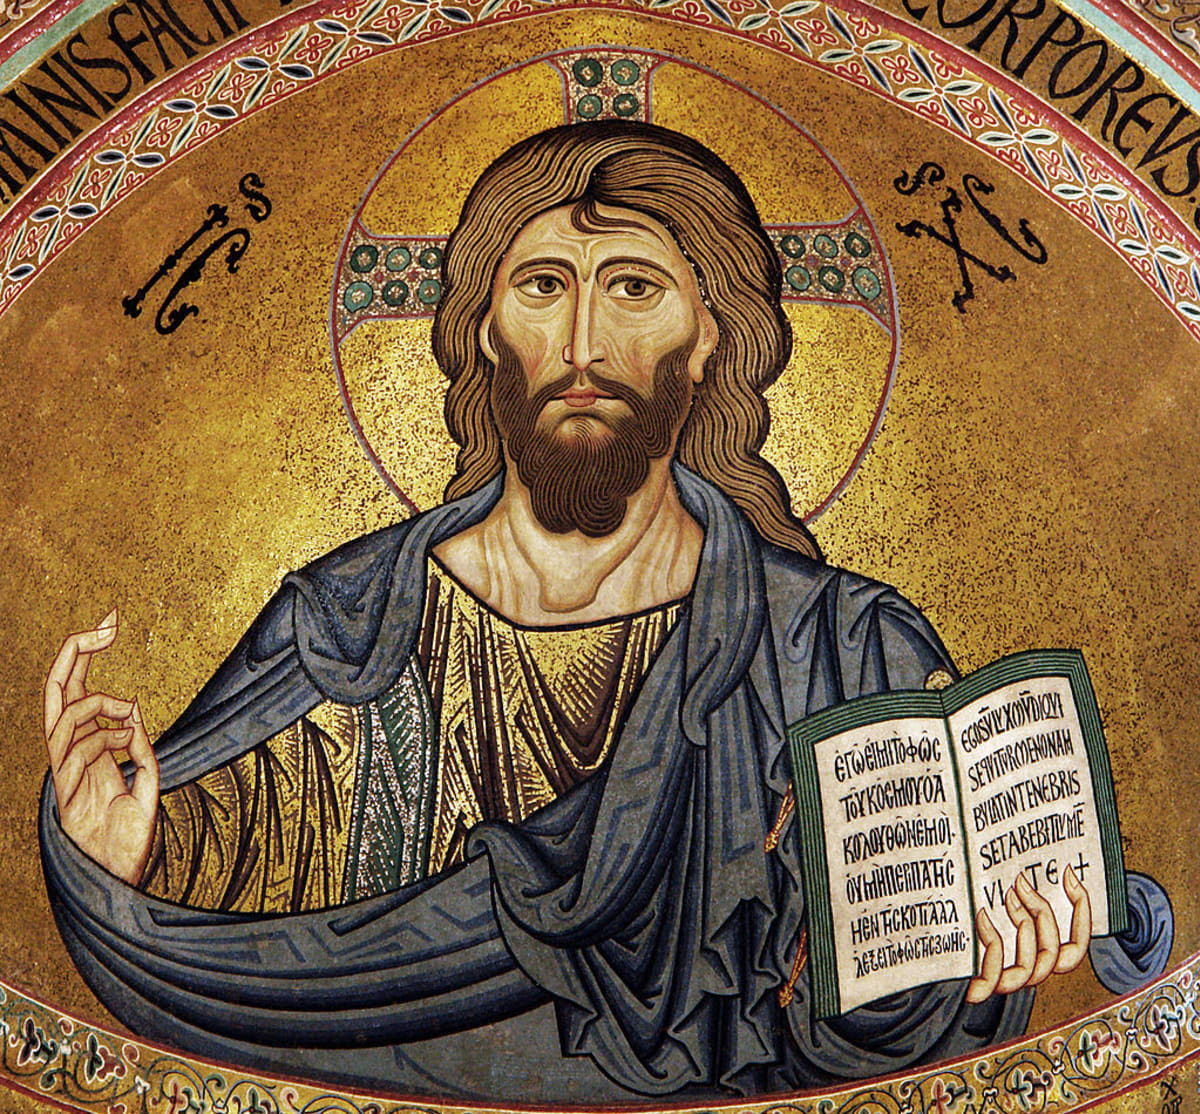 Ježíš v pojetí křesťanském. V islámu se zobrazovat nesmí